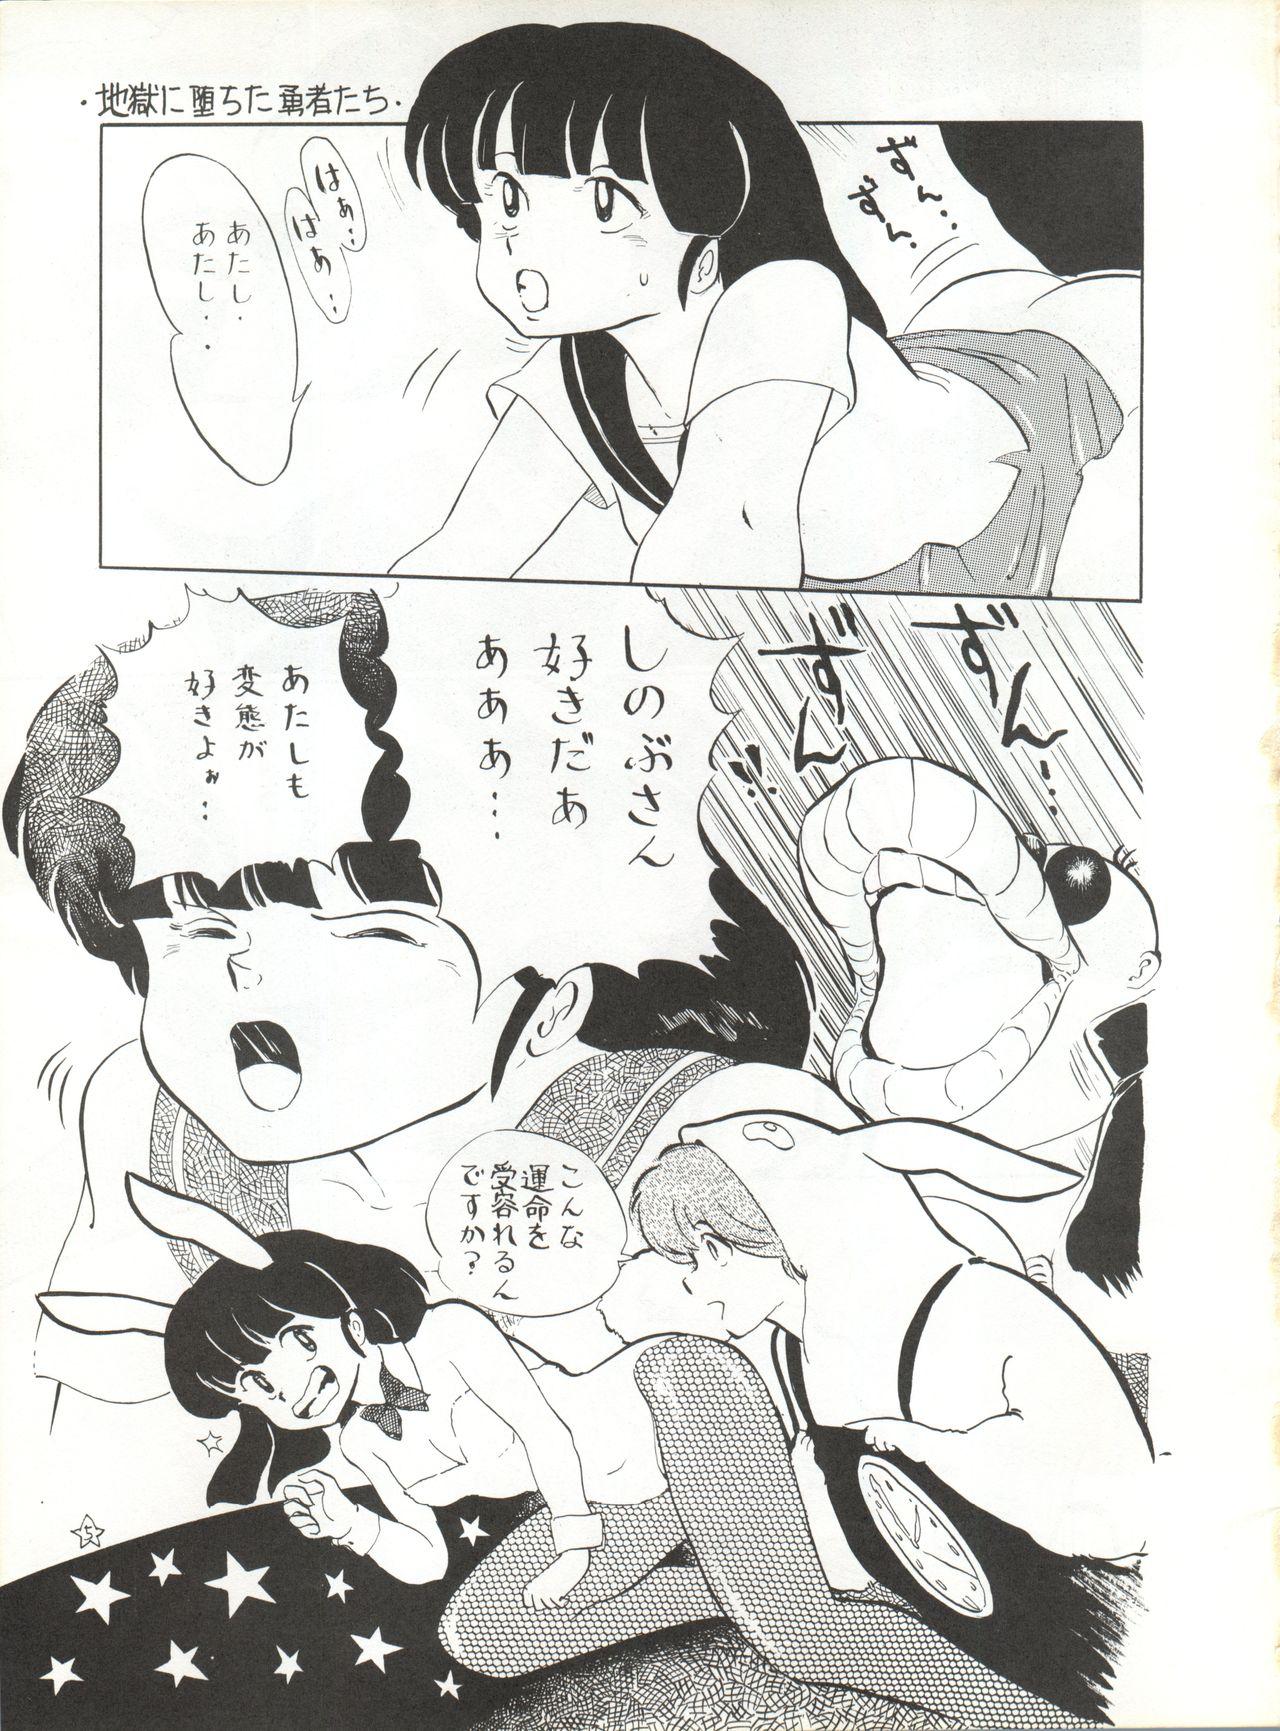 Bunduda Natsu no Arashi - Urusei yatsura Class Room - Page 5